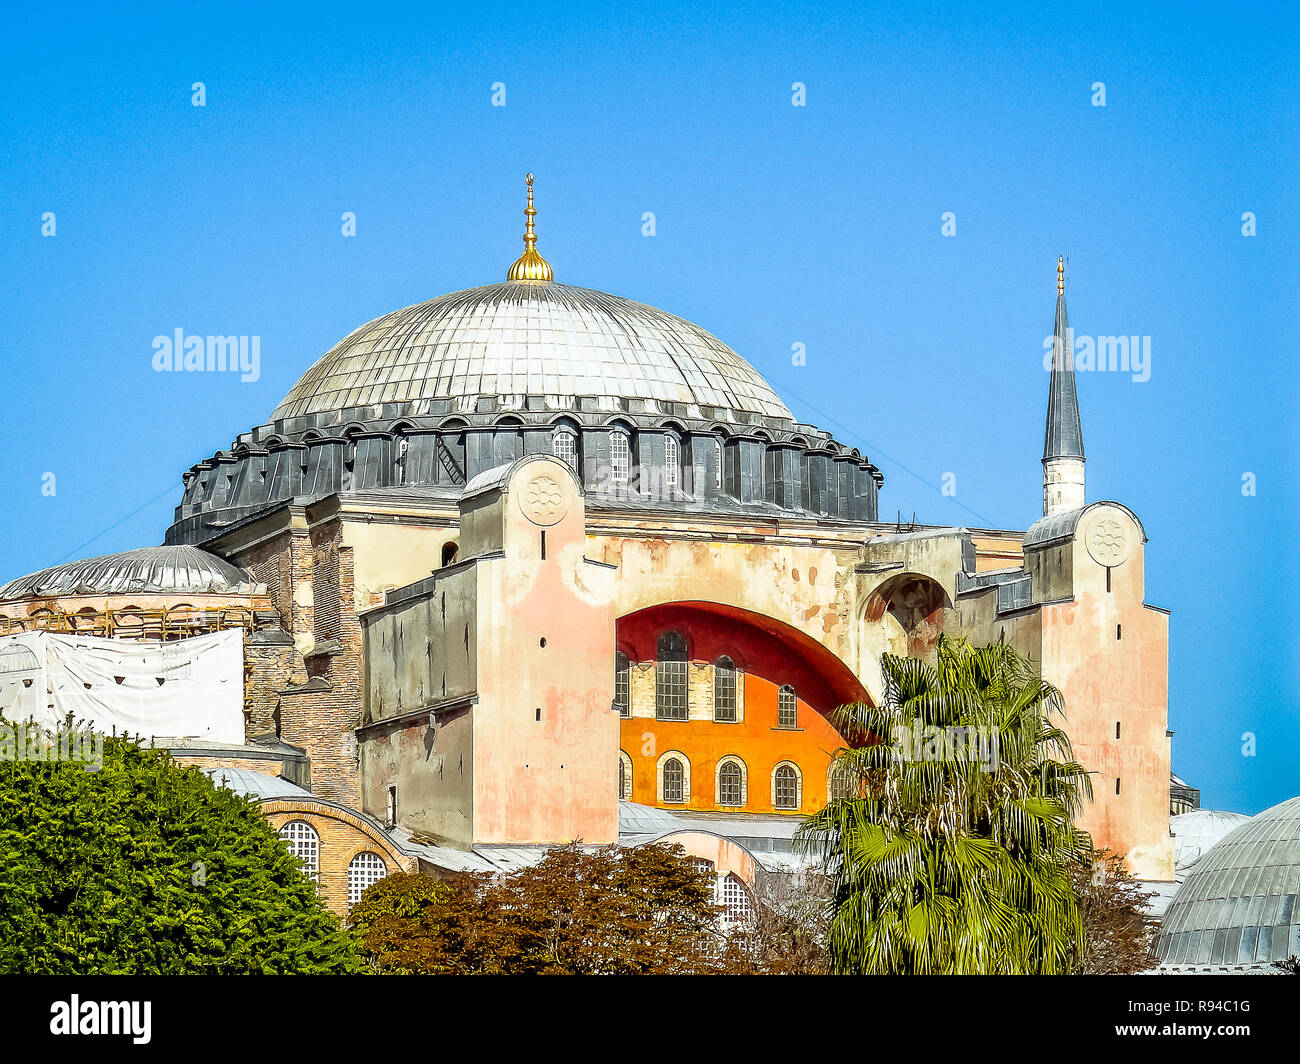 Fassade der Hagia Sofia und seiner Kuppel gegen den blauen Himmel, Istanbul, Türkei, 9. Oktober 2013 Stockfoto